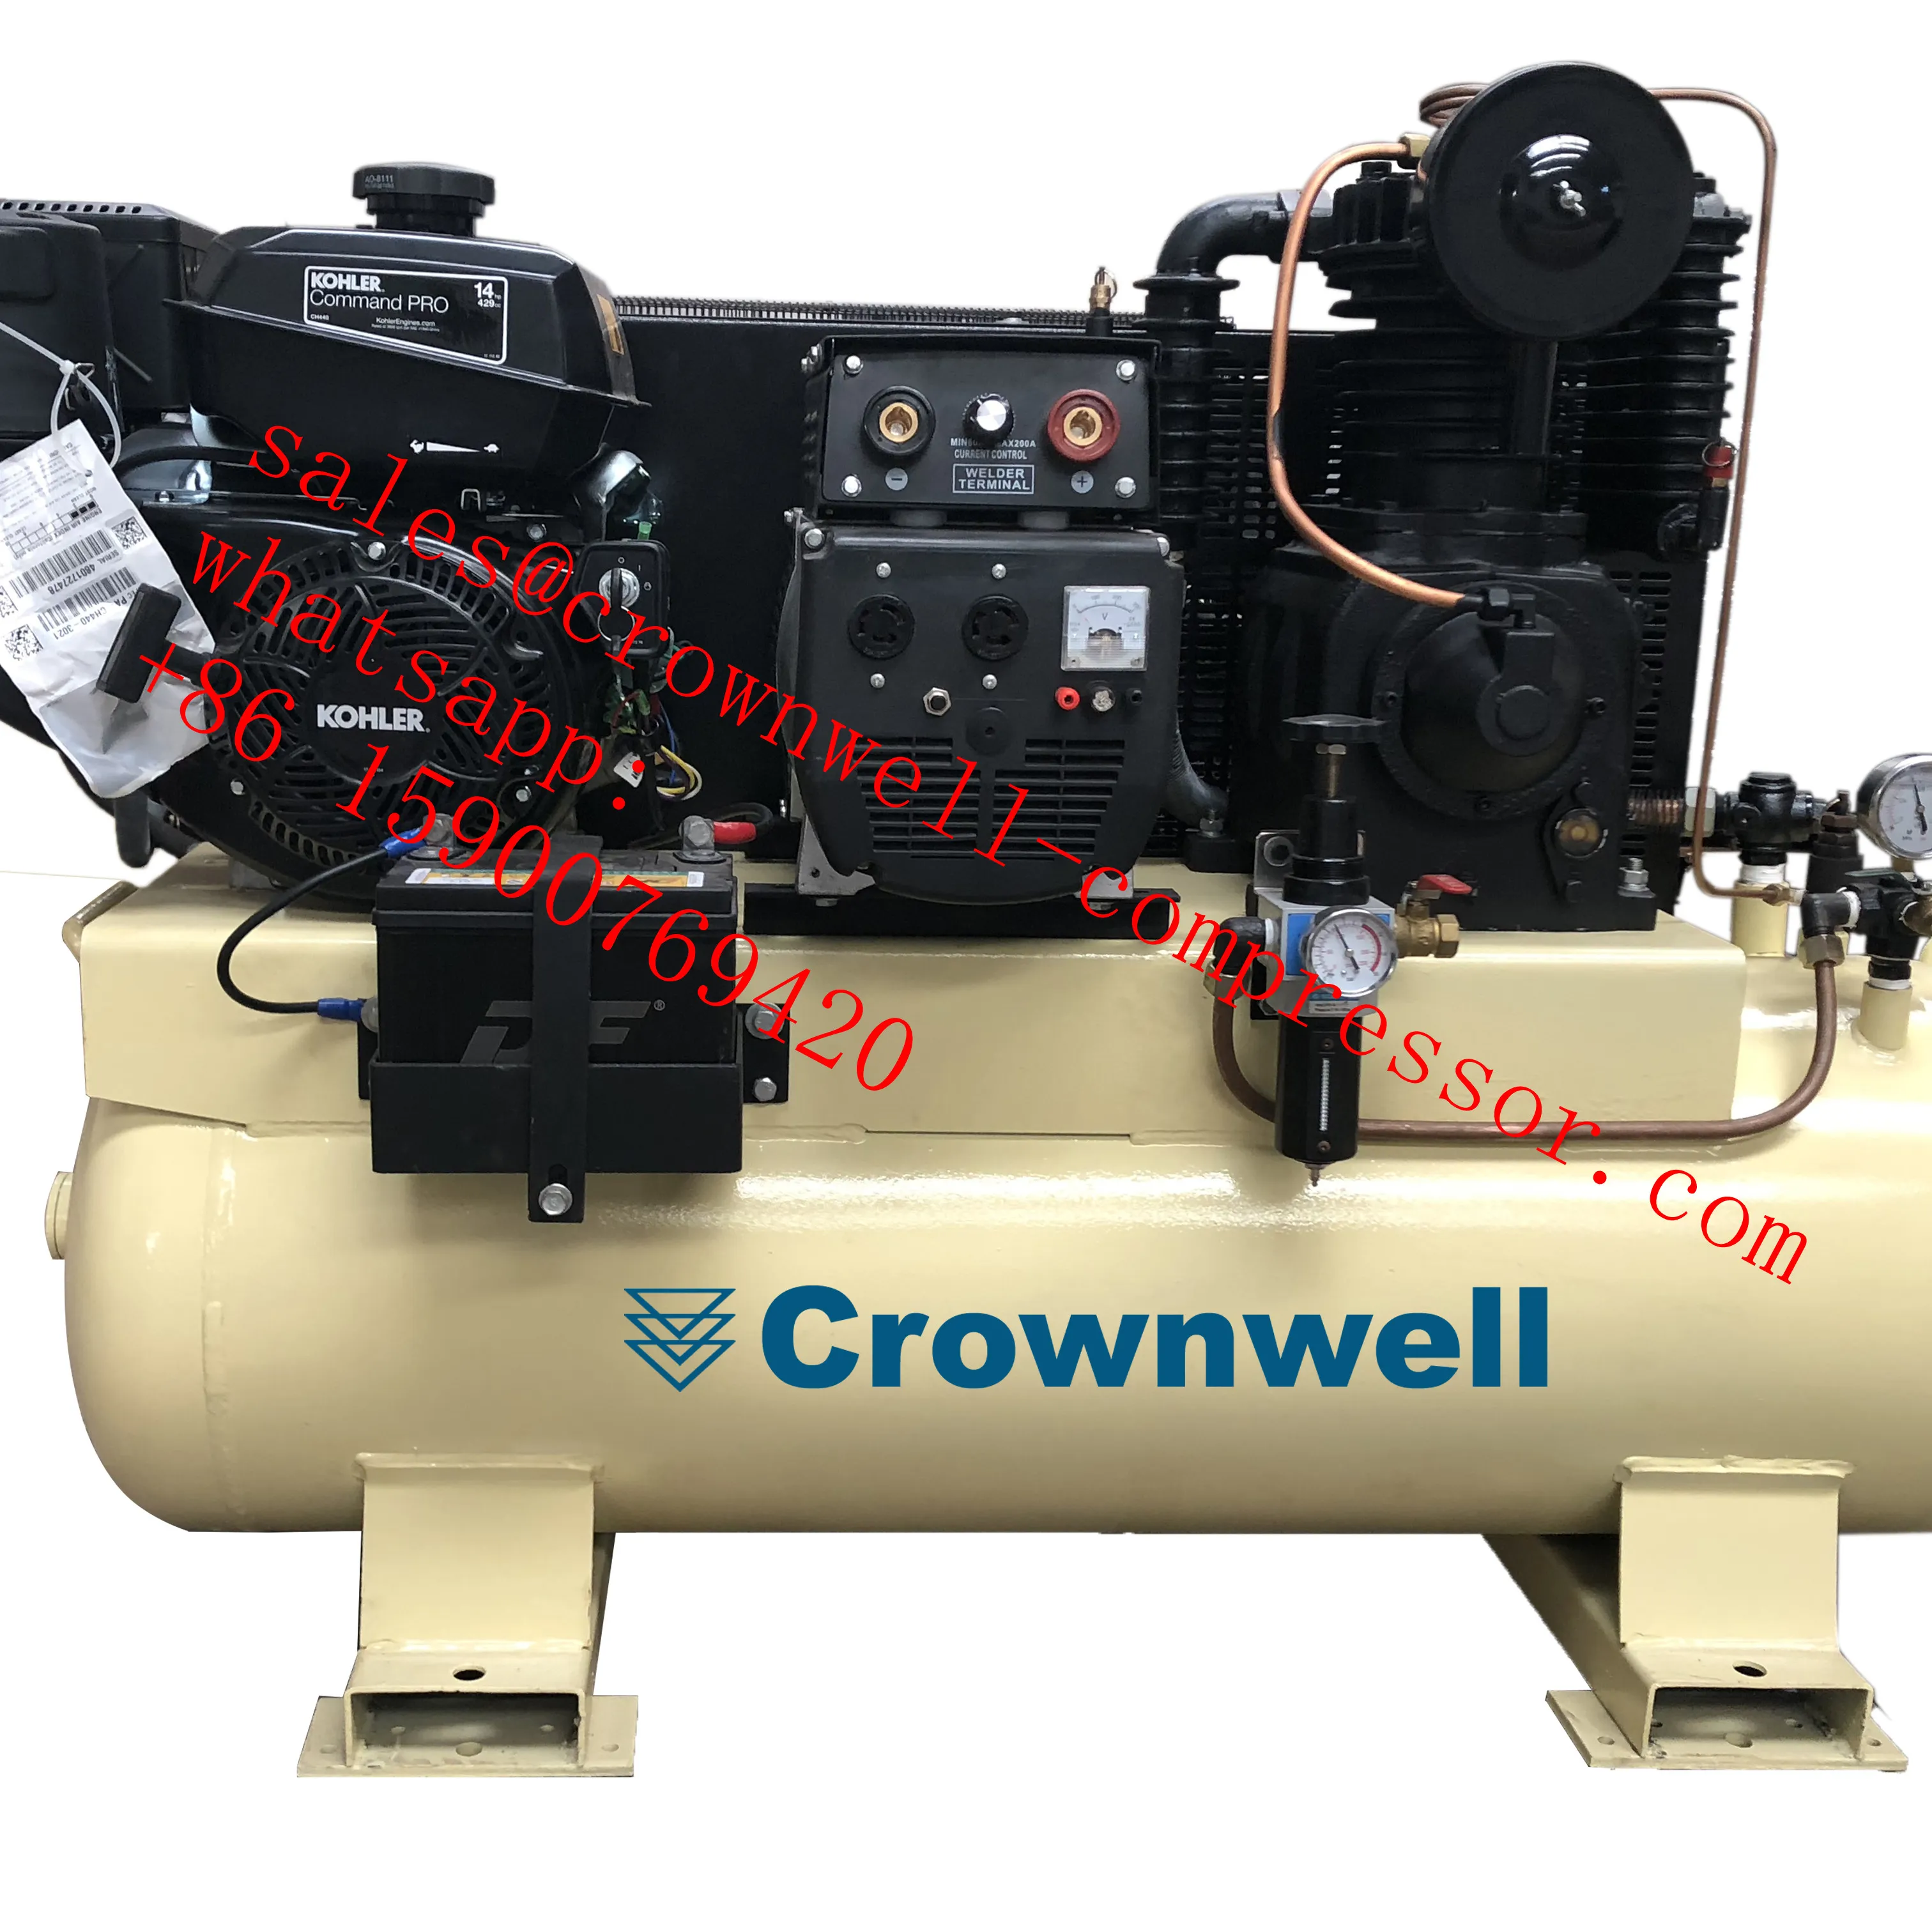 Crownwell Compressore generatore di saldatore elettrico 3 in 1 modello CWYL1105-3 IN 1